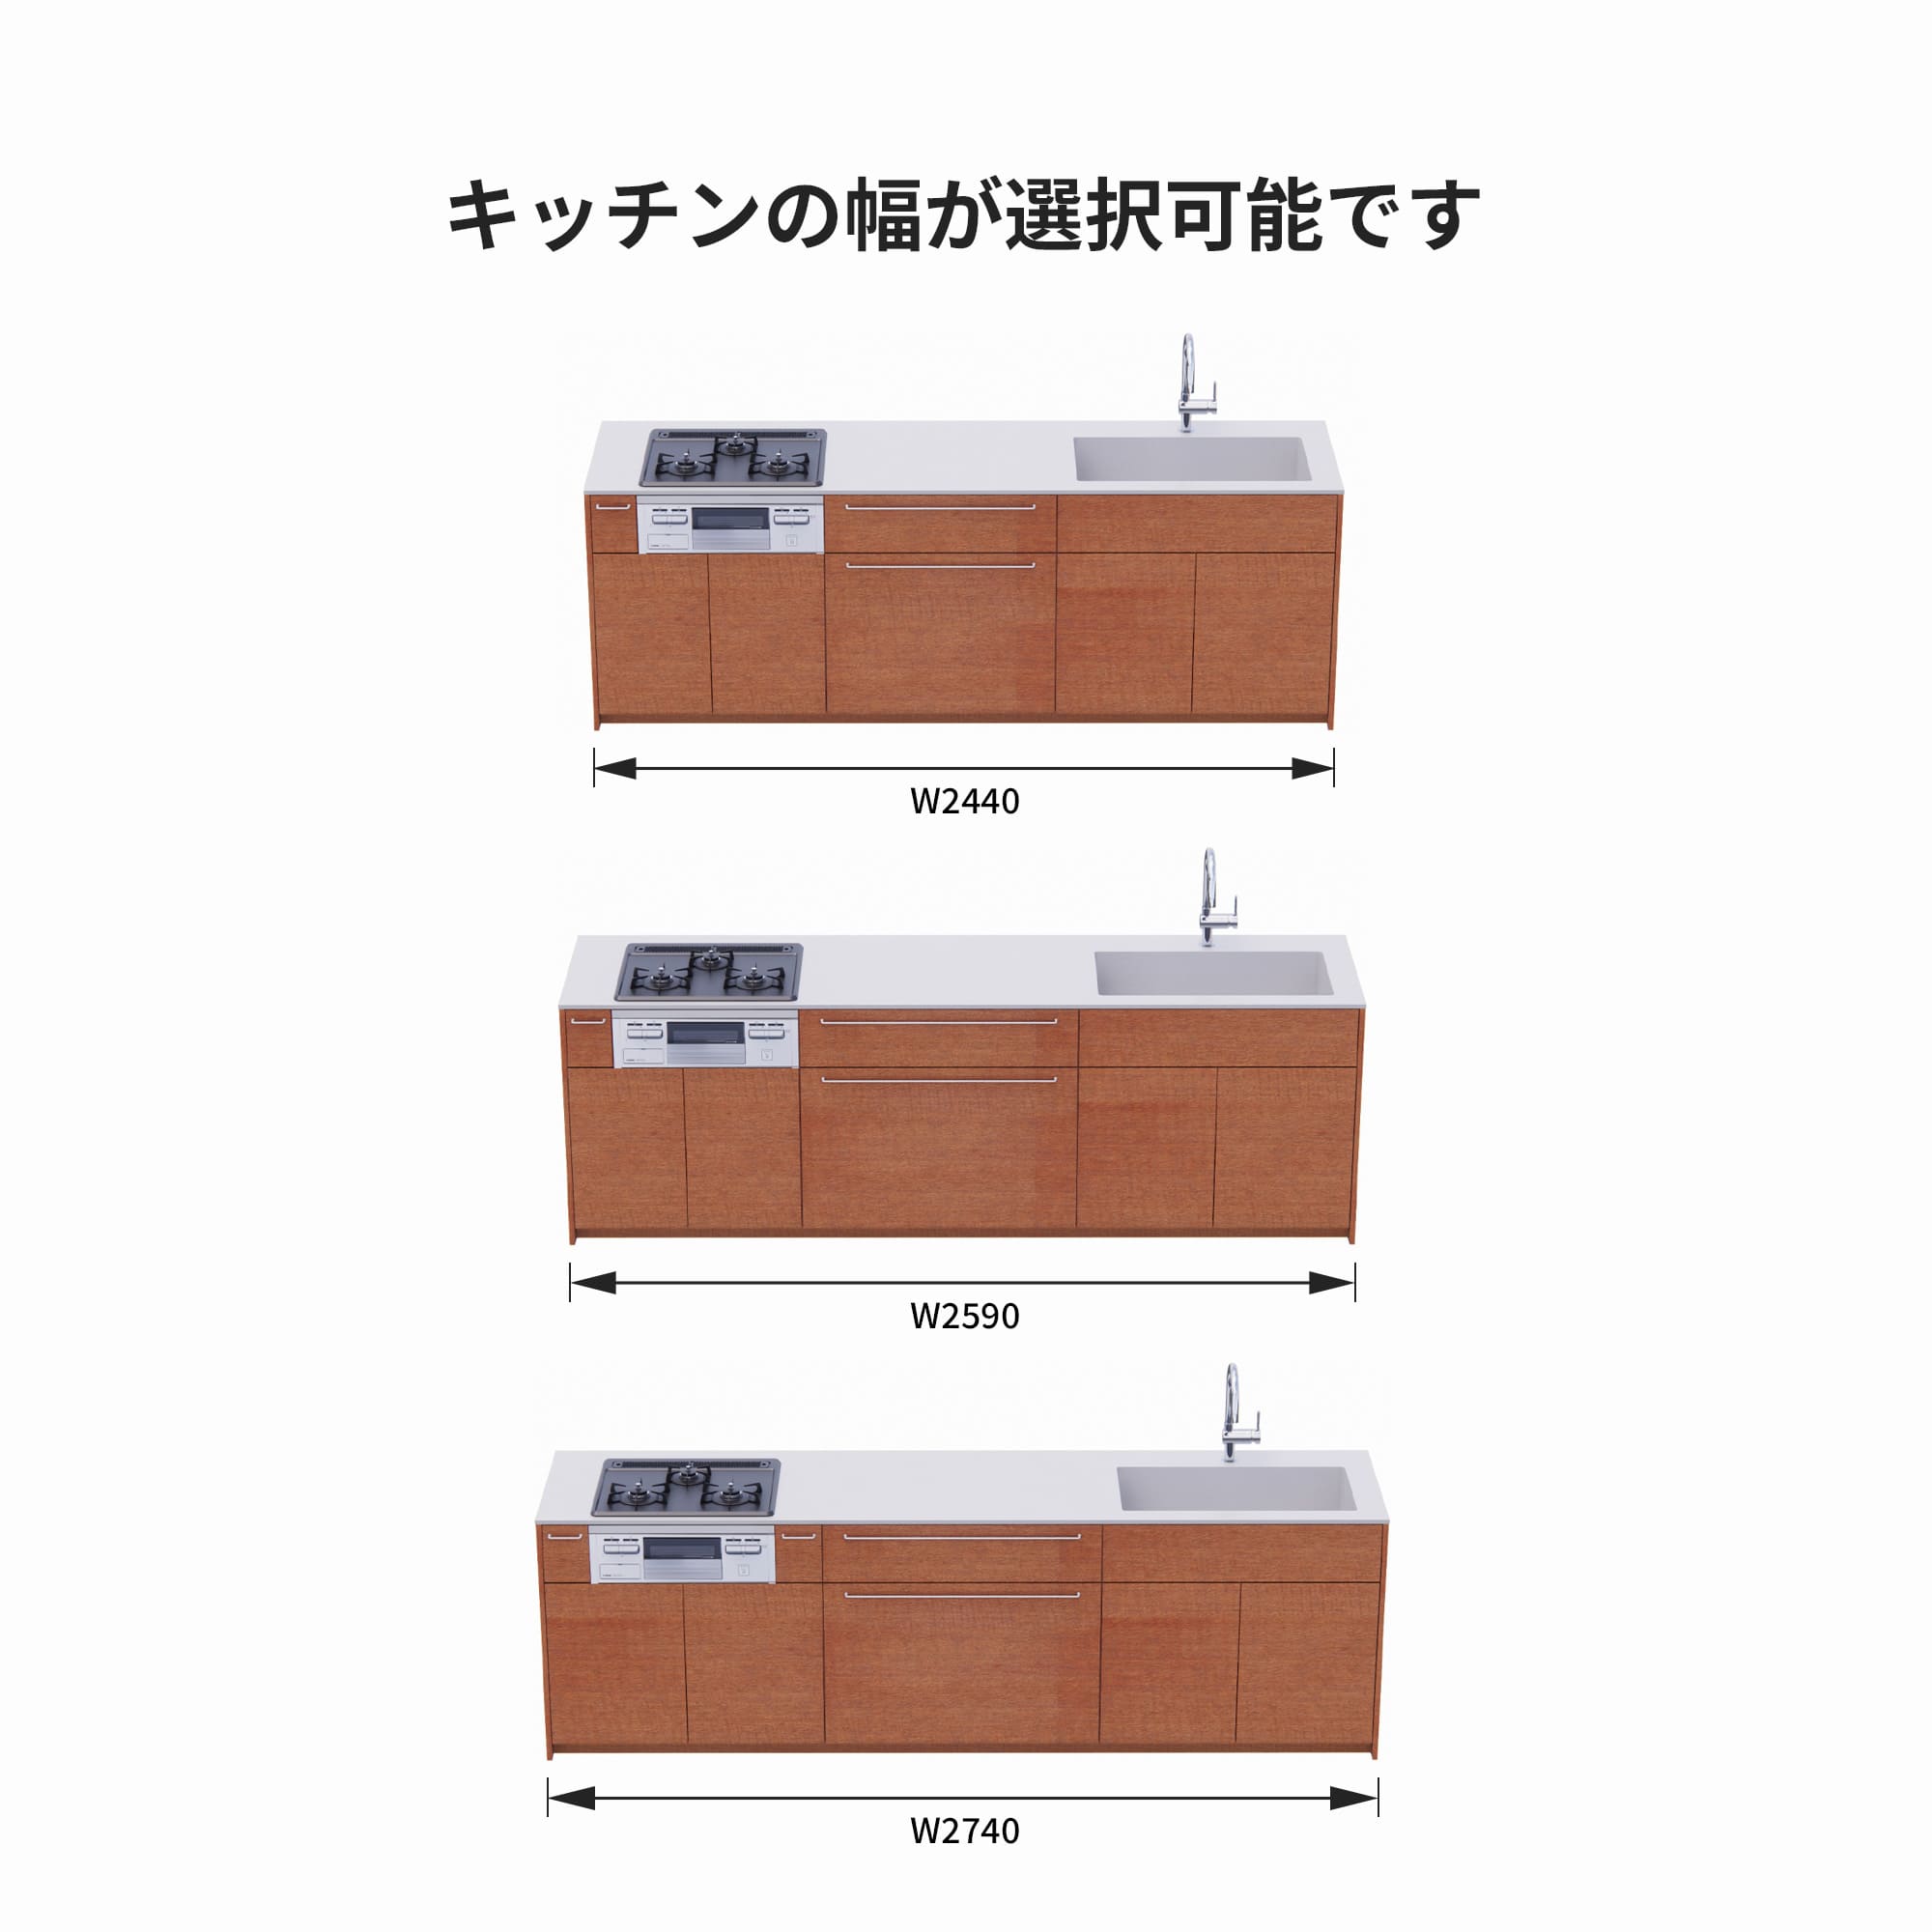 木製システムキッチン 対面型 W2440～2740・コンロあり / オーブンなし / 食洗機なし KB-KC022-41-G183